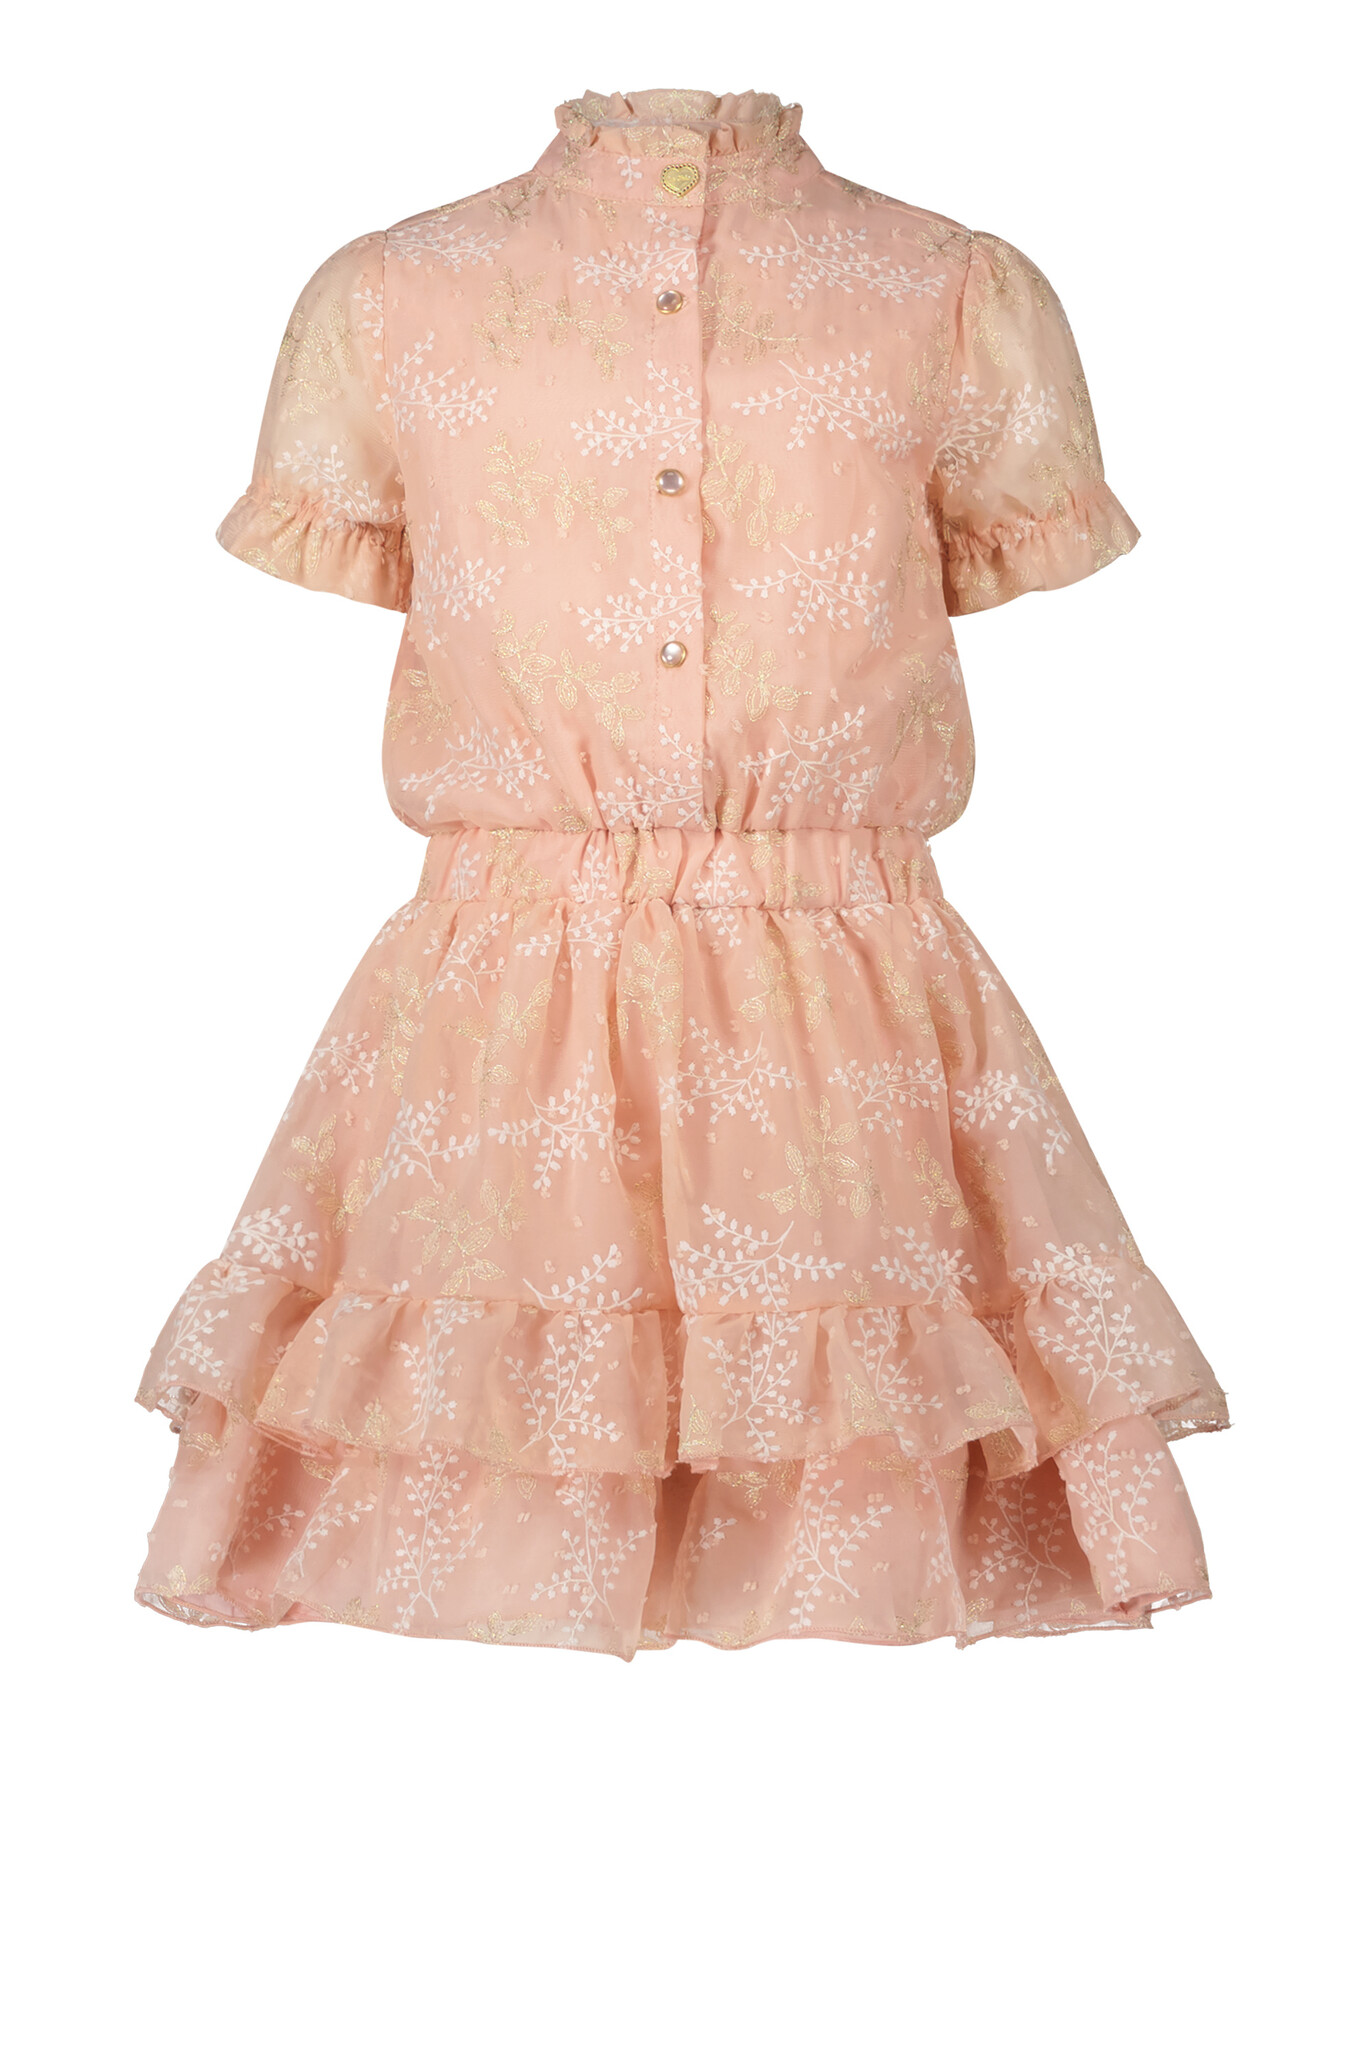 Swayl Chiffon Dress - Baroque Pink